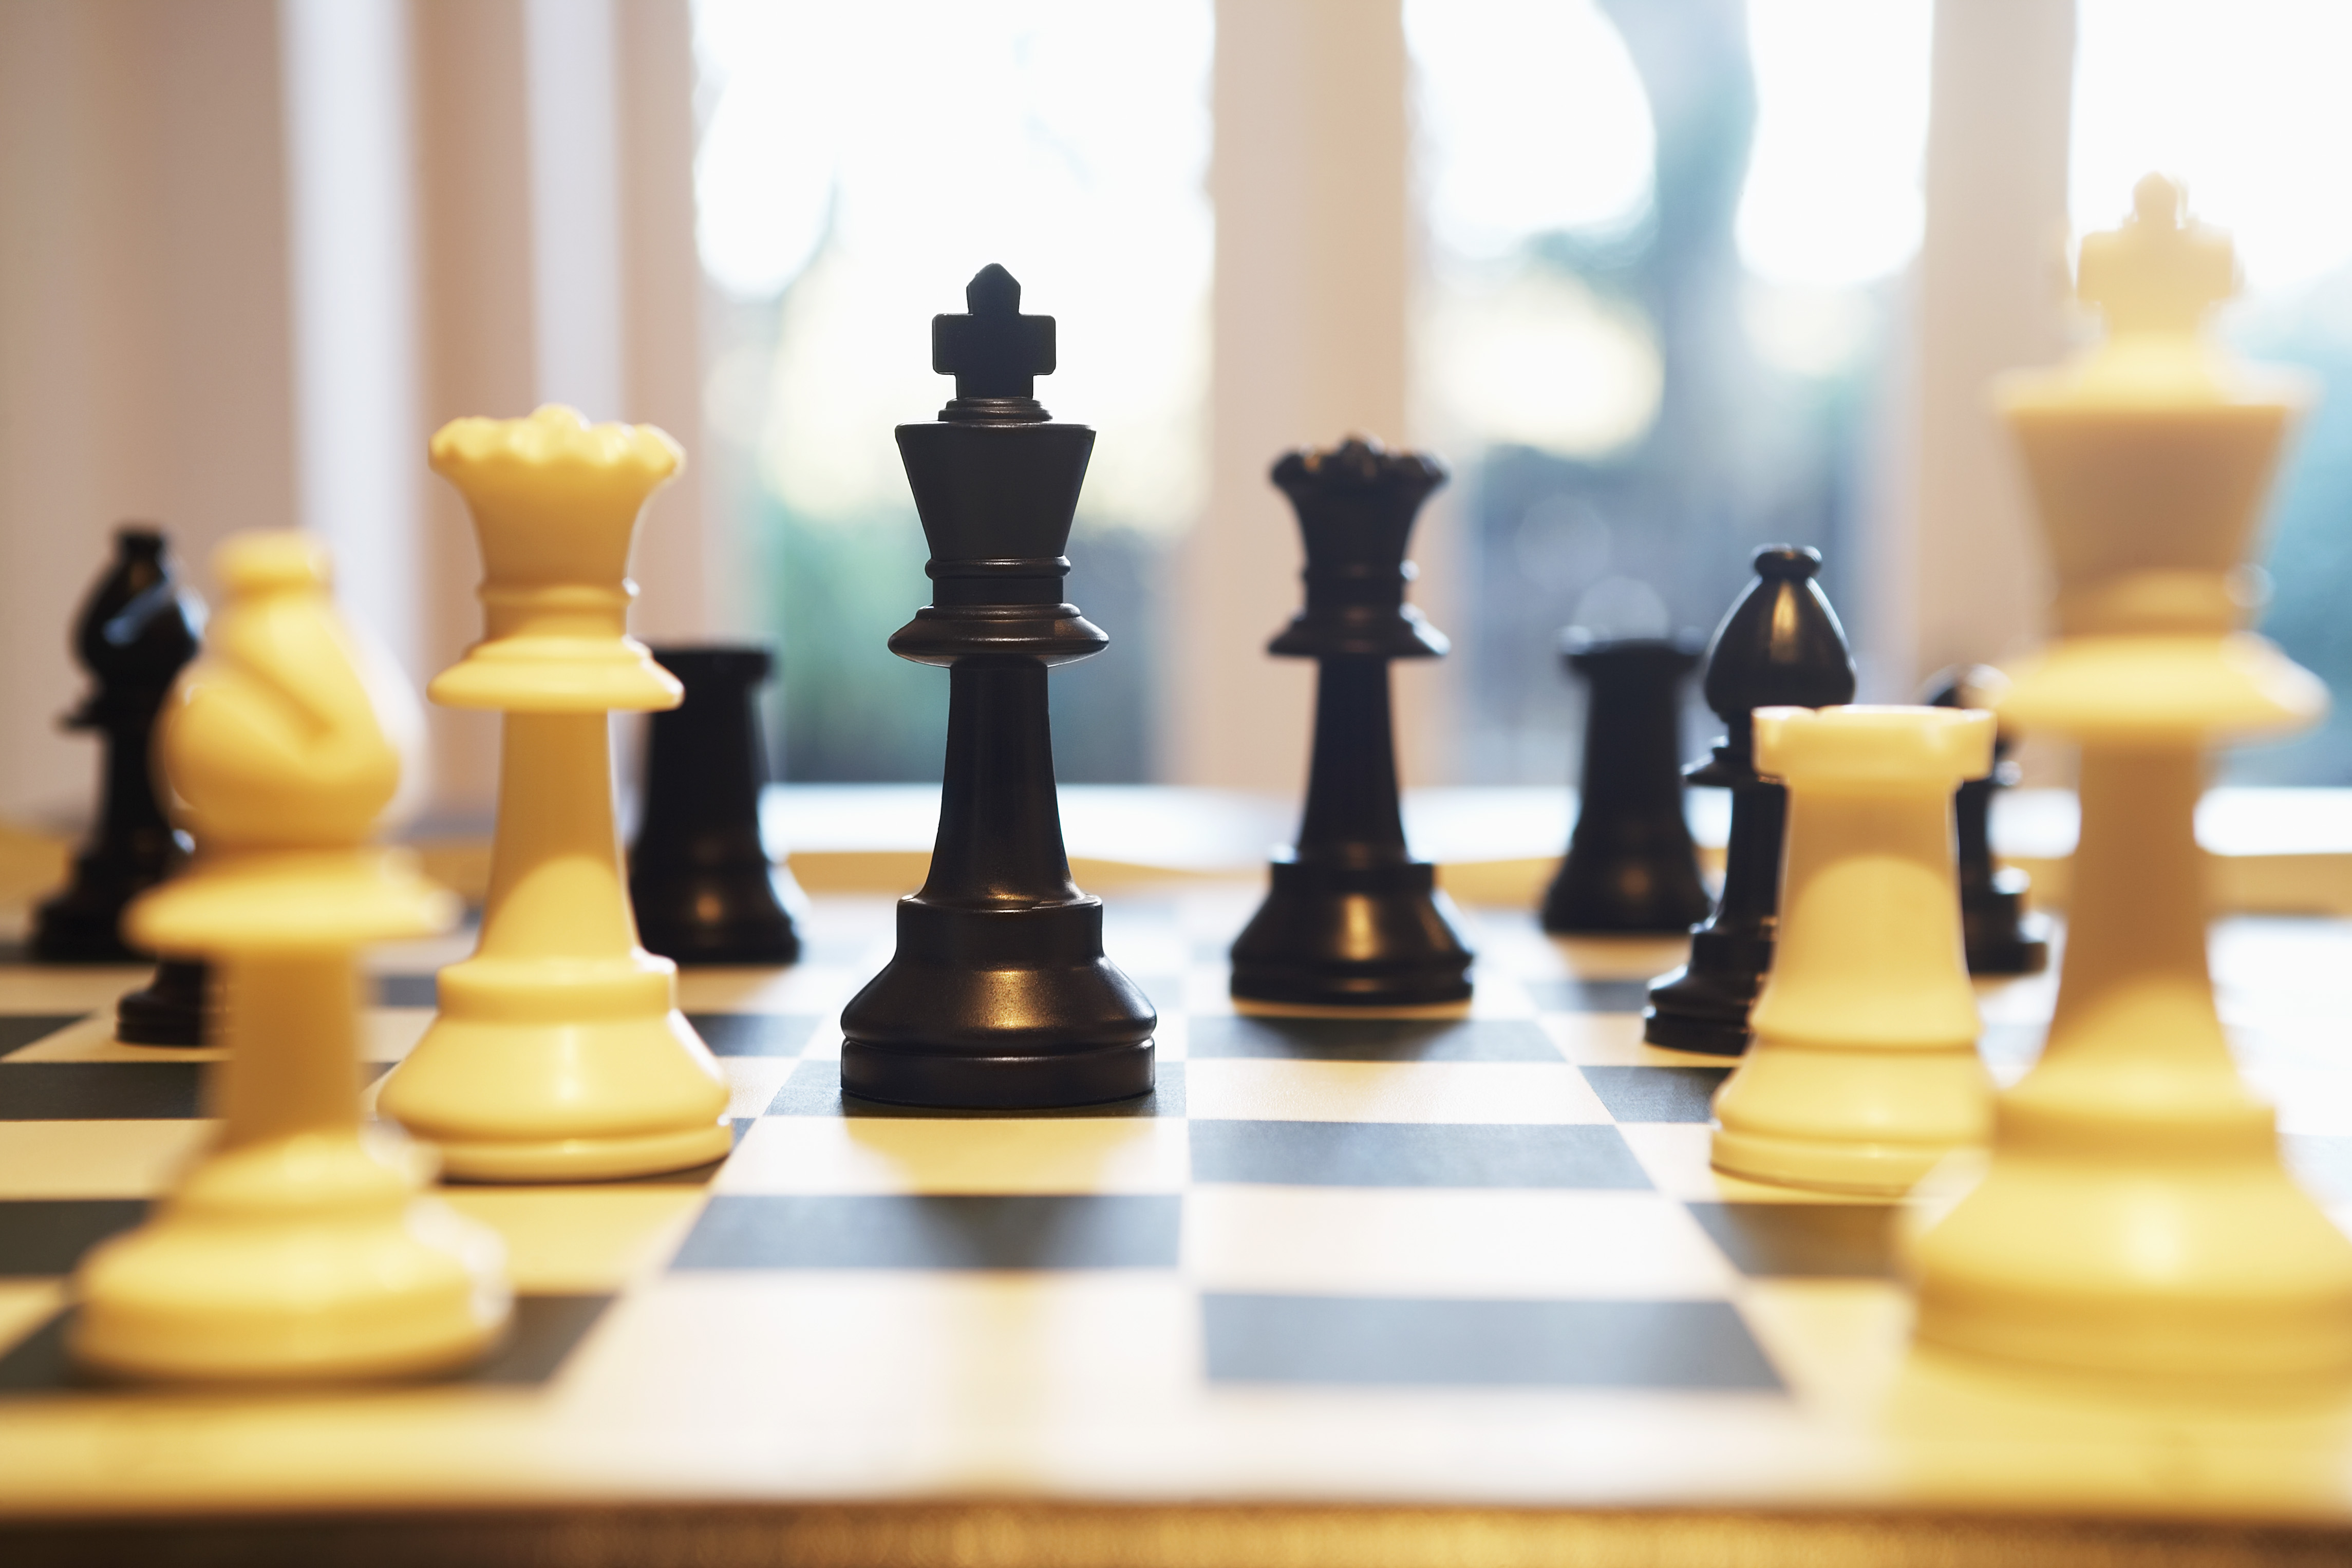 Ingyenes online sakksuli indul iskoláknak és kluboknak - Blikk